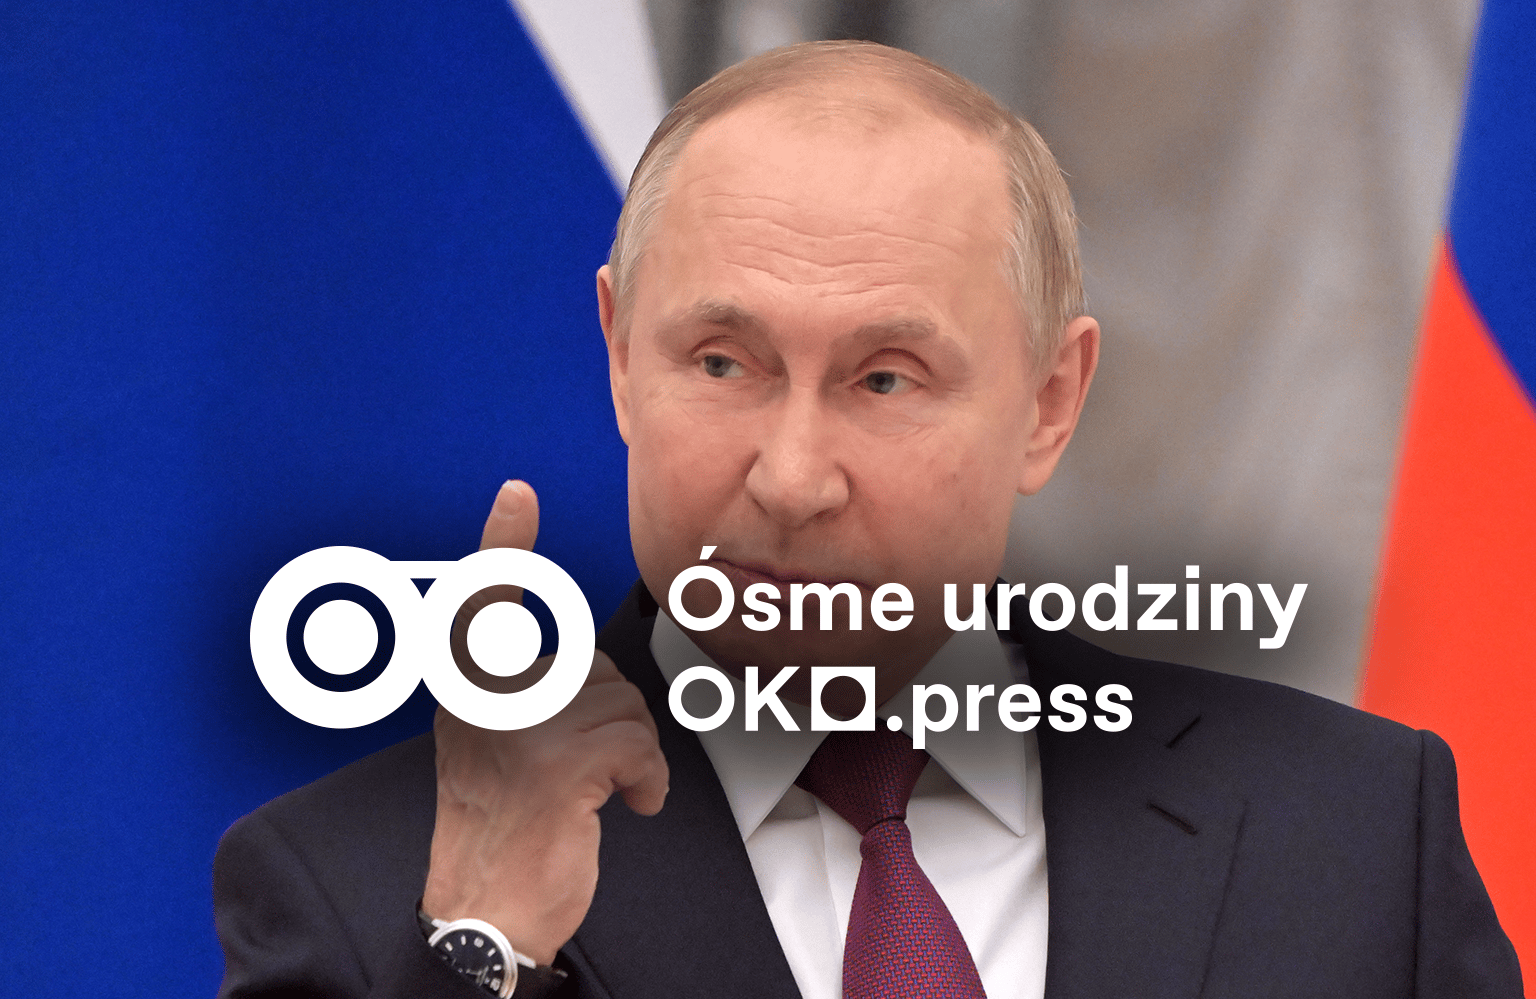 Putin grozący palcem. Napis "Ósme urodziny OKO.press"